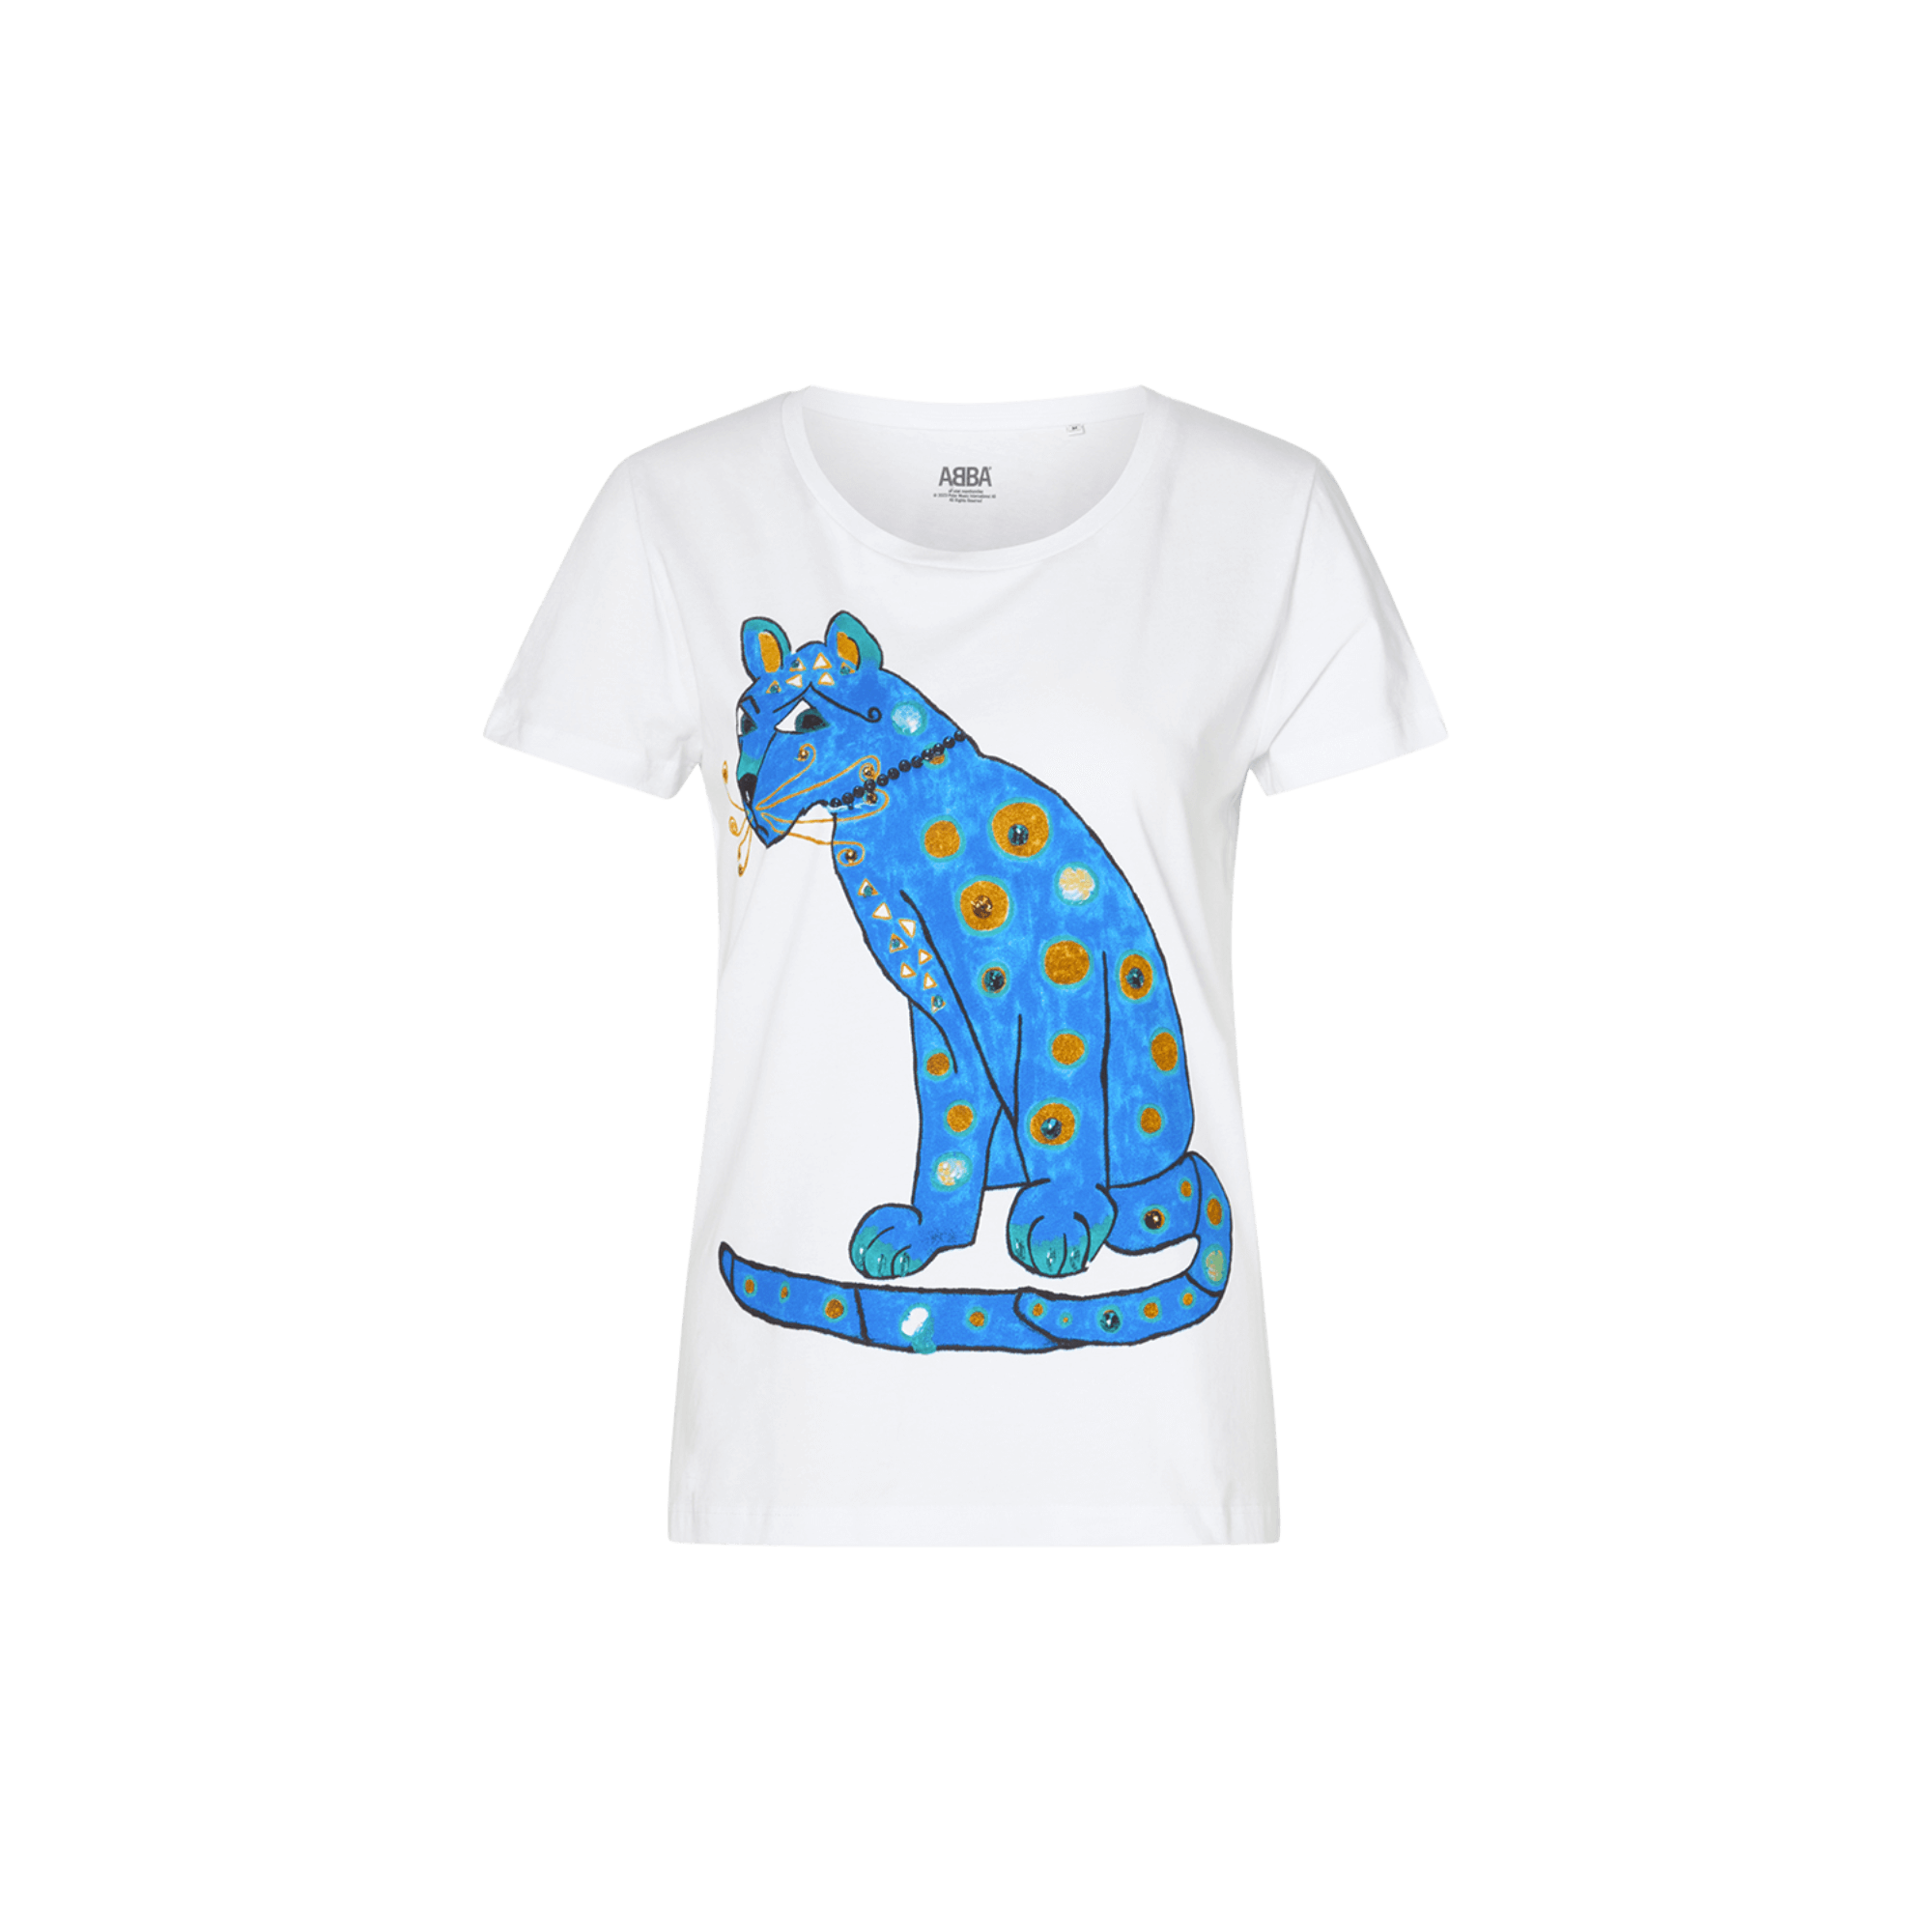 ABBA blue cat t-shirt